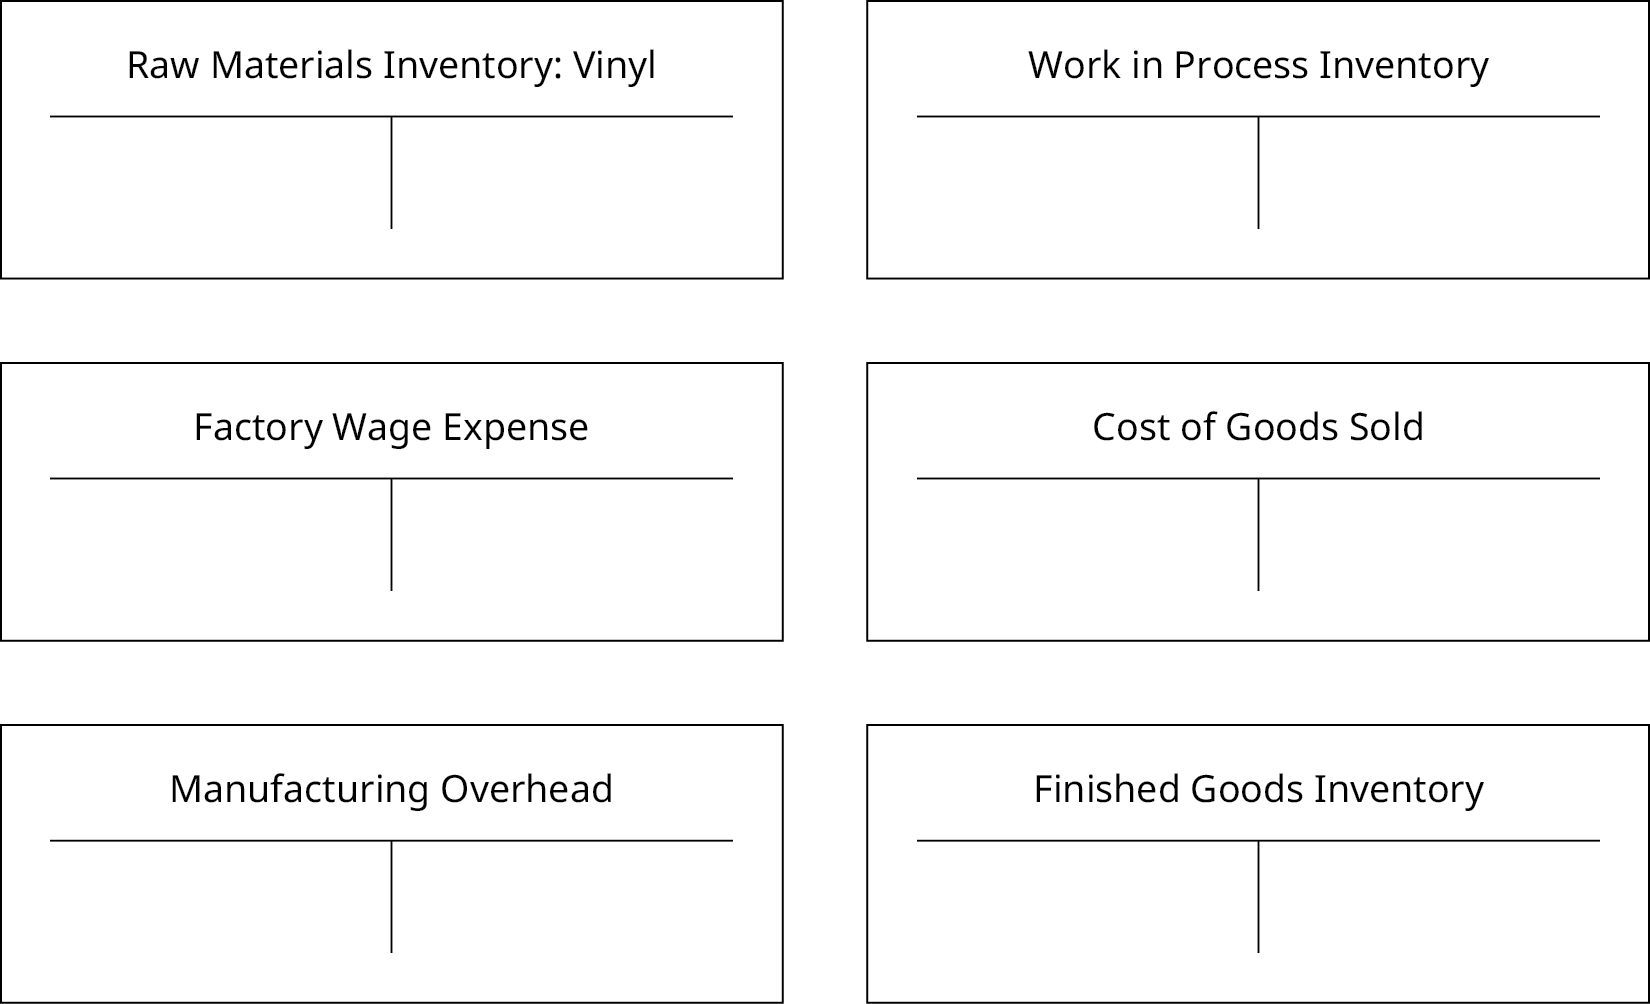 此图中有六个空白 T 型账户：“原材料库存：黑胶唱片”、“工厂工资支出”、“制造管理费用”、“在制品库存”、“销售成本” 和 “成品库存” 各一个。